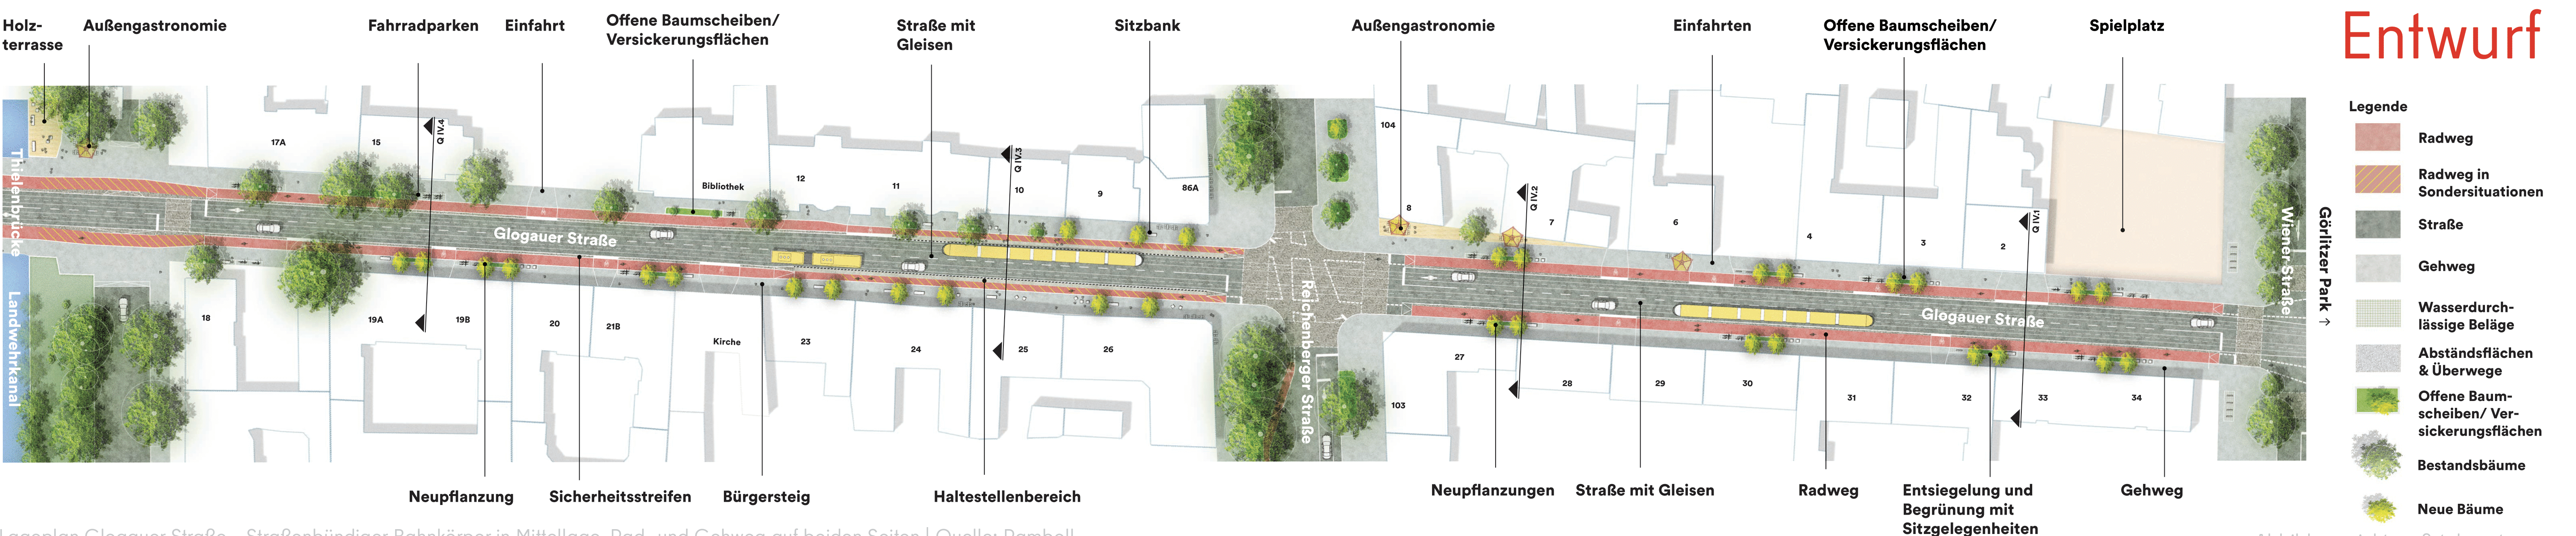 Diese Abbildung zeigt eine illustrierte technische Zeichnung des Bauabschnitts Glogauer Straße